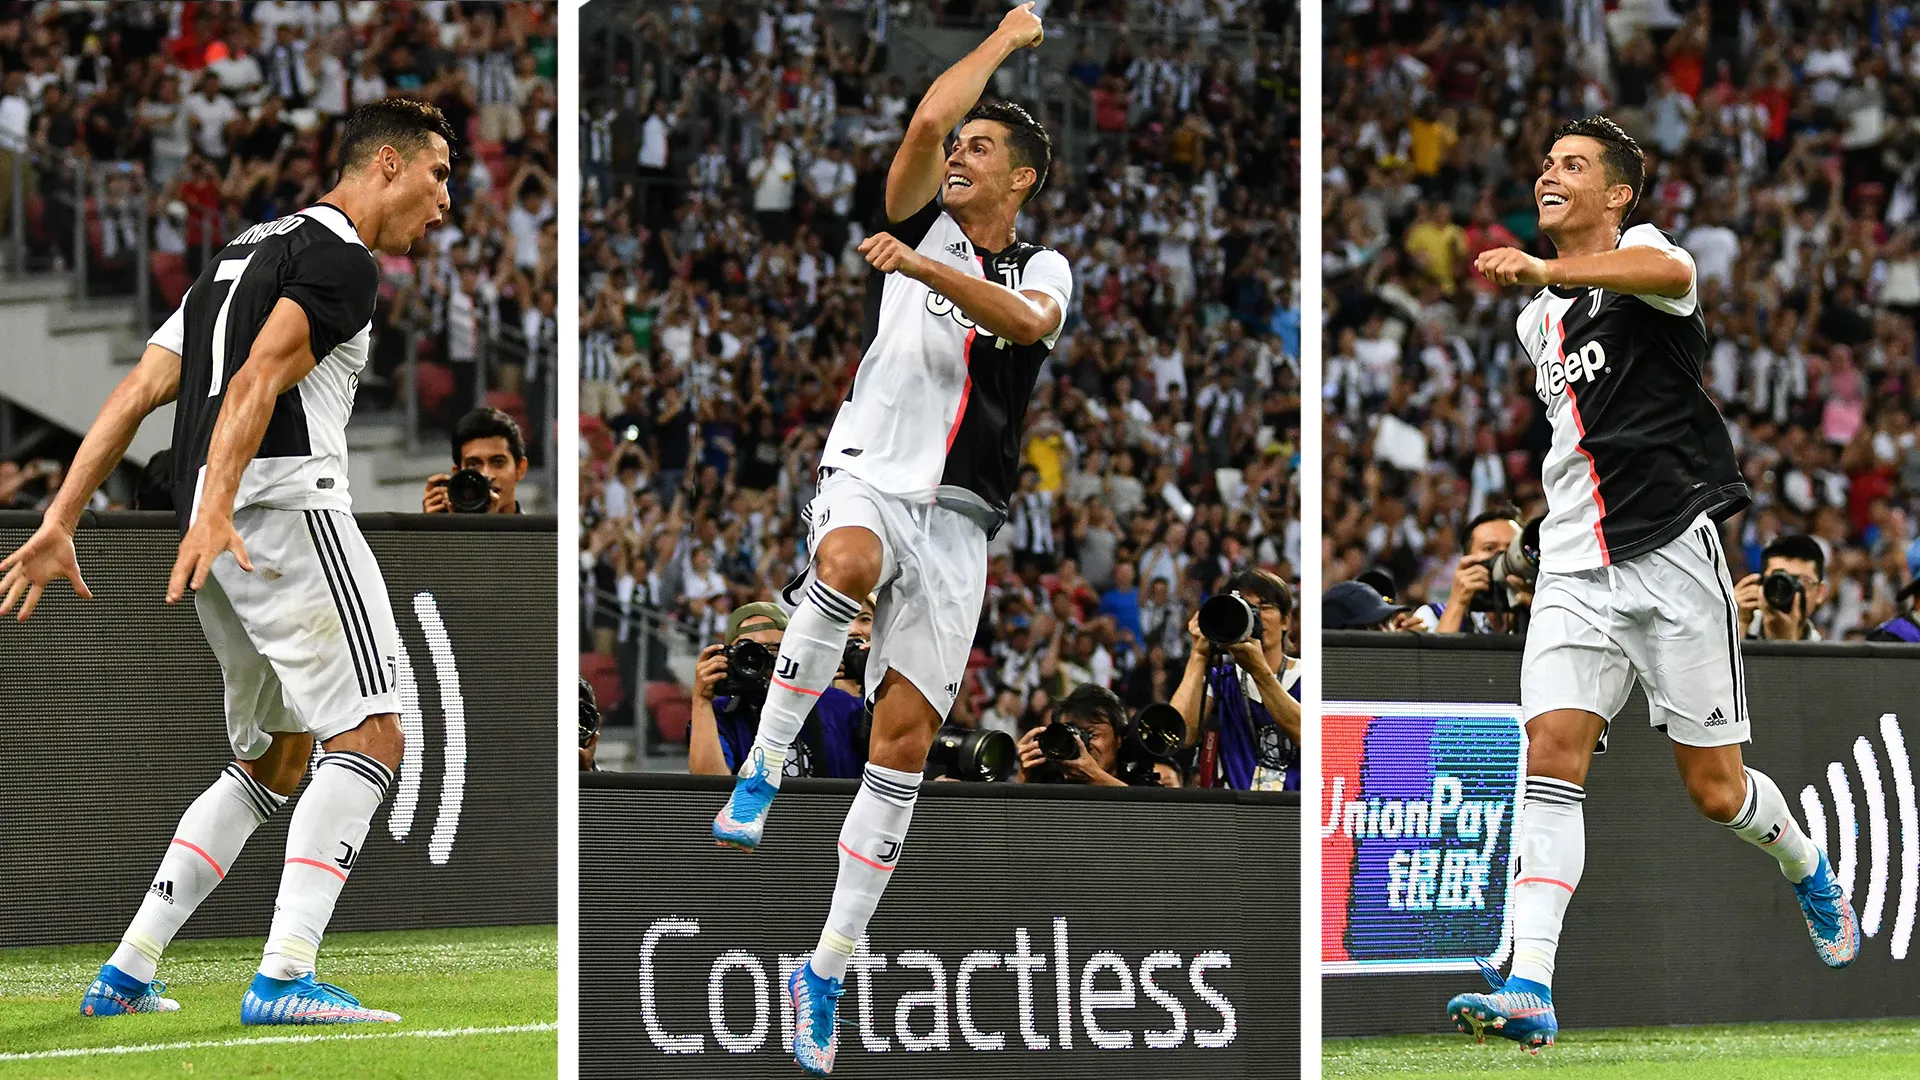 SIIIUUU!': How Cristiano Ronaldo made iconic celebration his